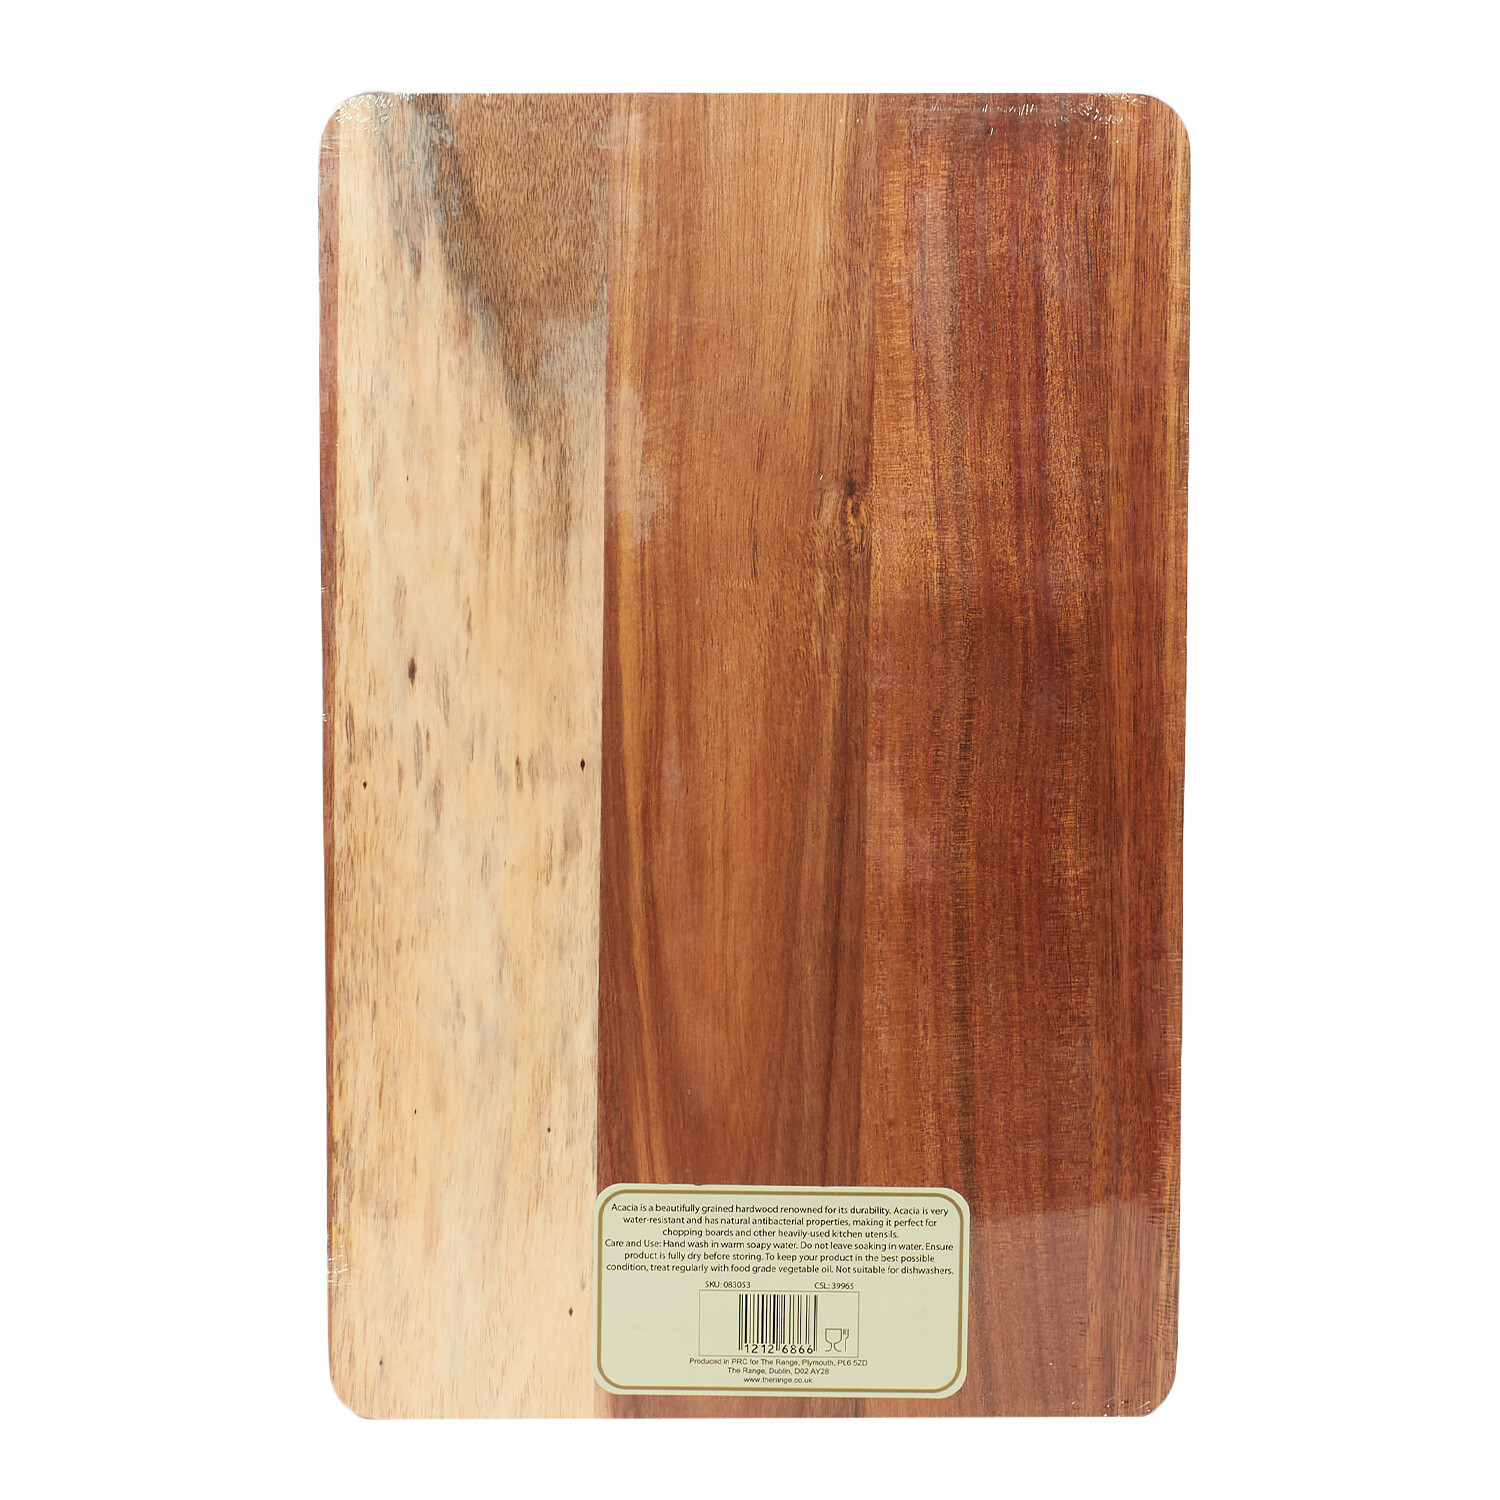 Acacia Traditional Chopping Board - Brown Image 2